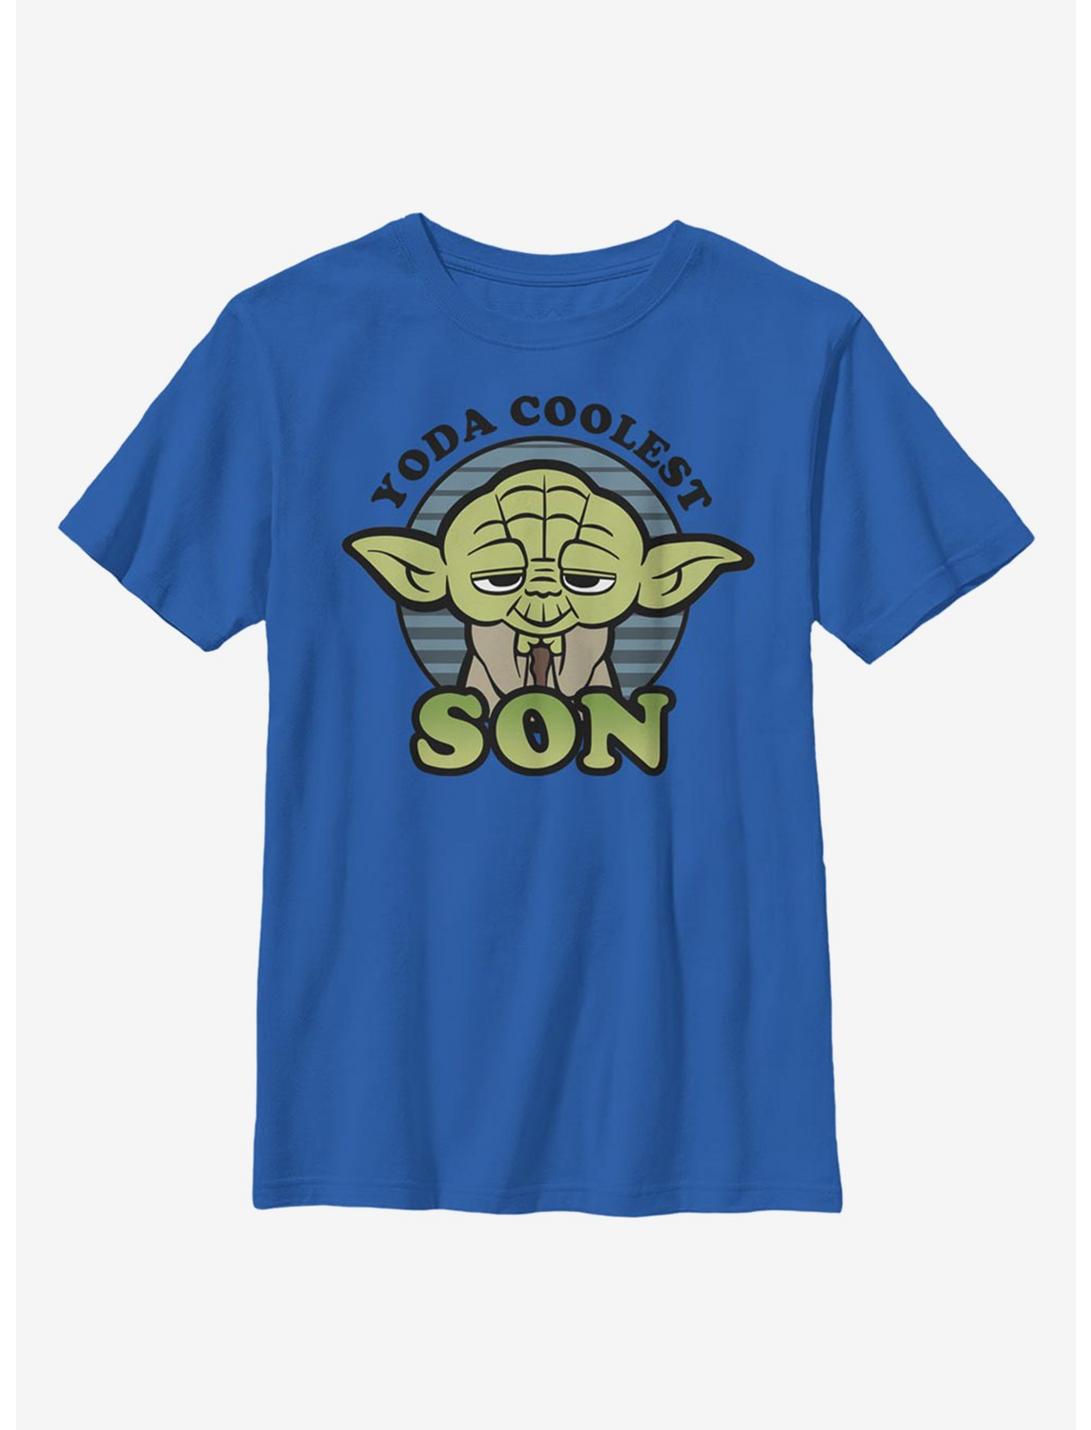 Star Wars Yoda Coolest Son Youth T-Shirt, ROYAL, hi-res